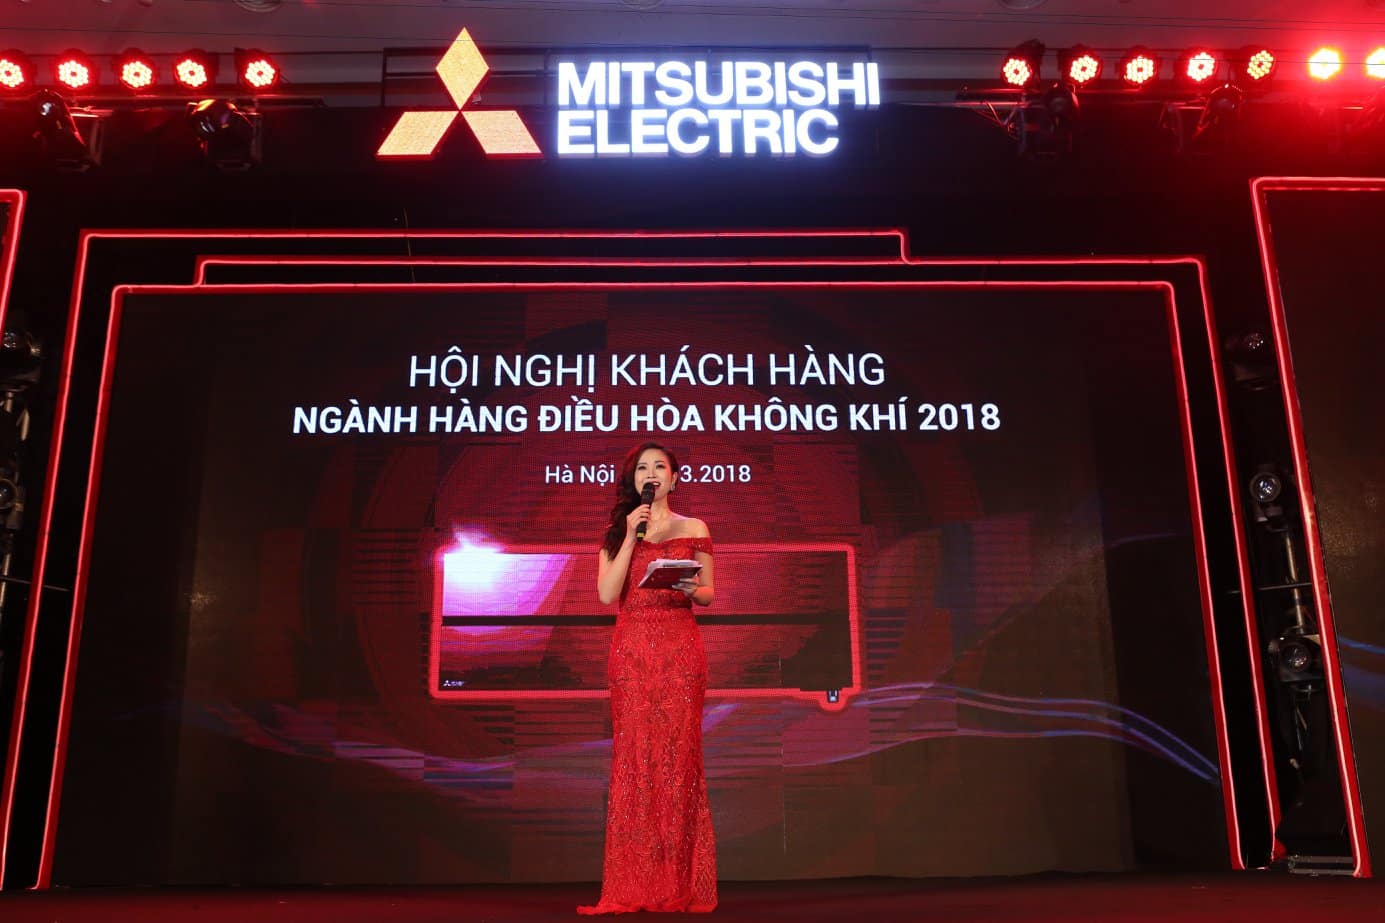  Hội nghị khách hàng Mittubishi Electric